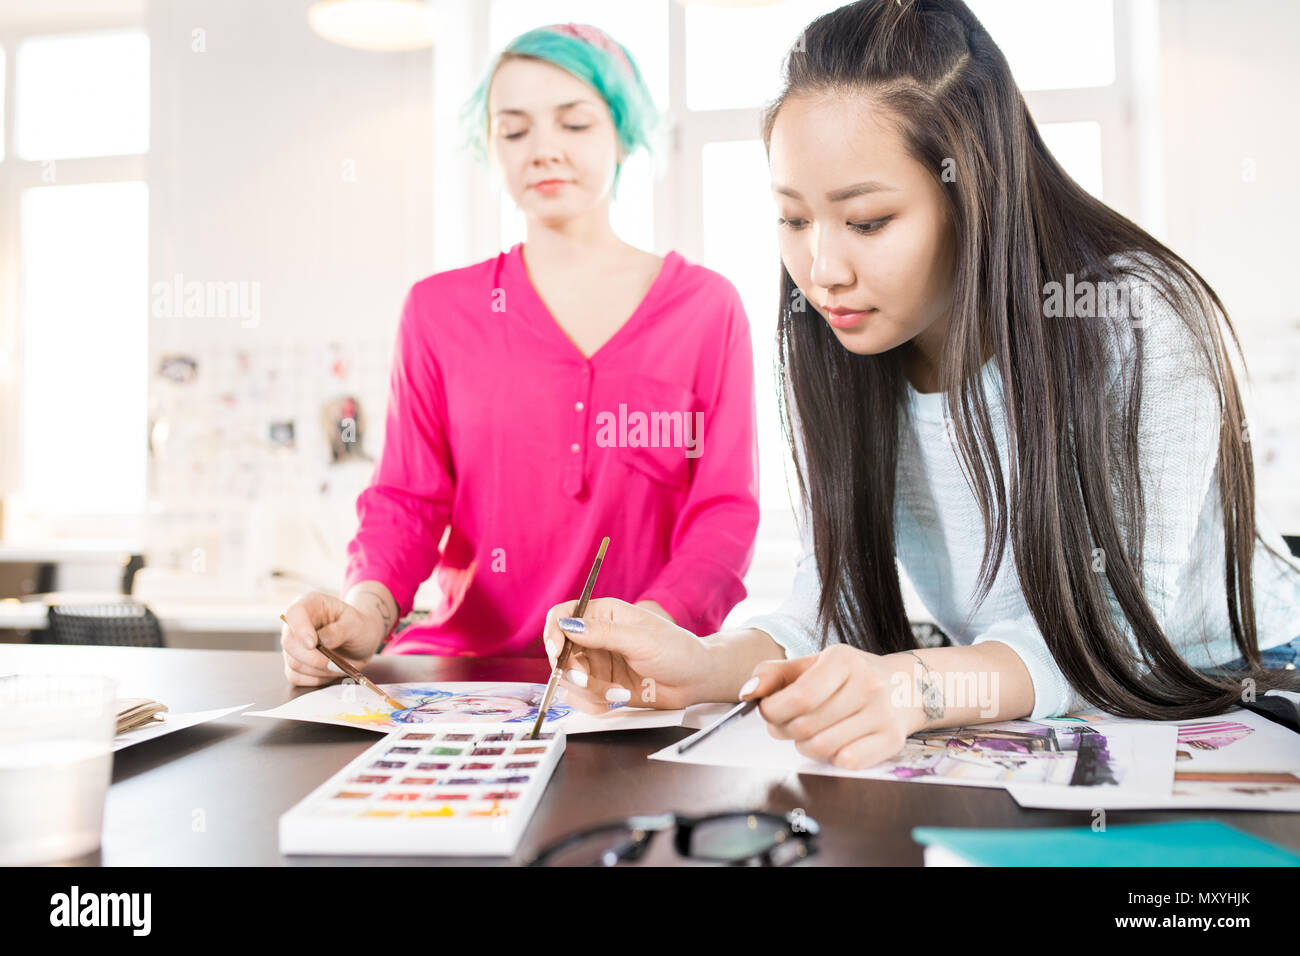 Portrait de deux jeunes femmes contemporain croquis dessin à l'aquarelle sur creative design projet en petit atelier, l'accent sur les jeunes asiatiques w Banque D'Images